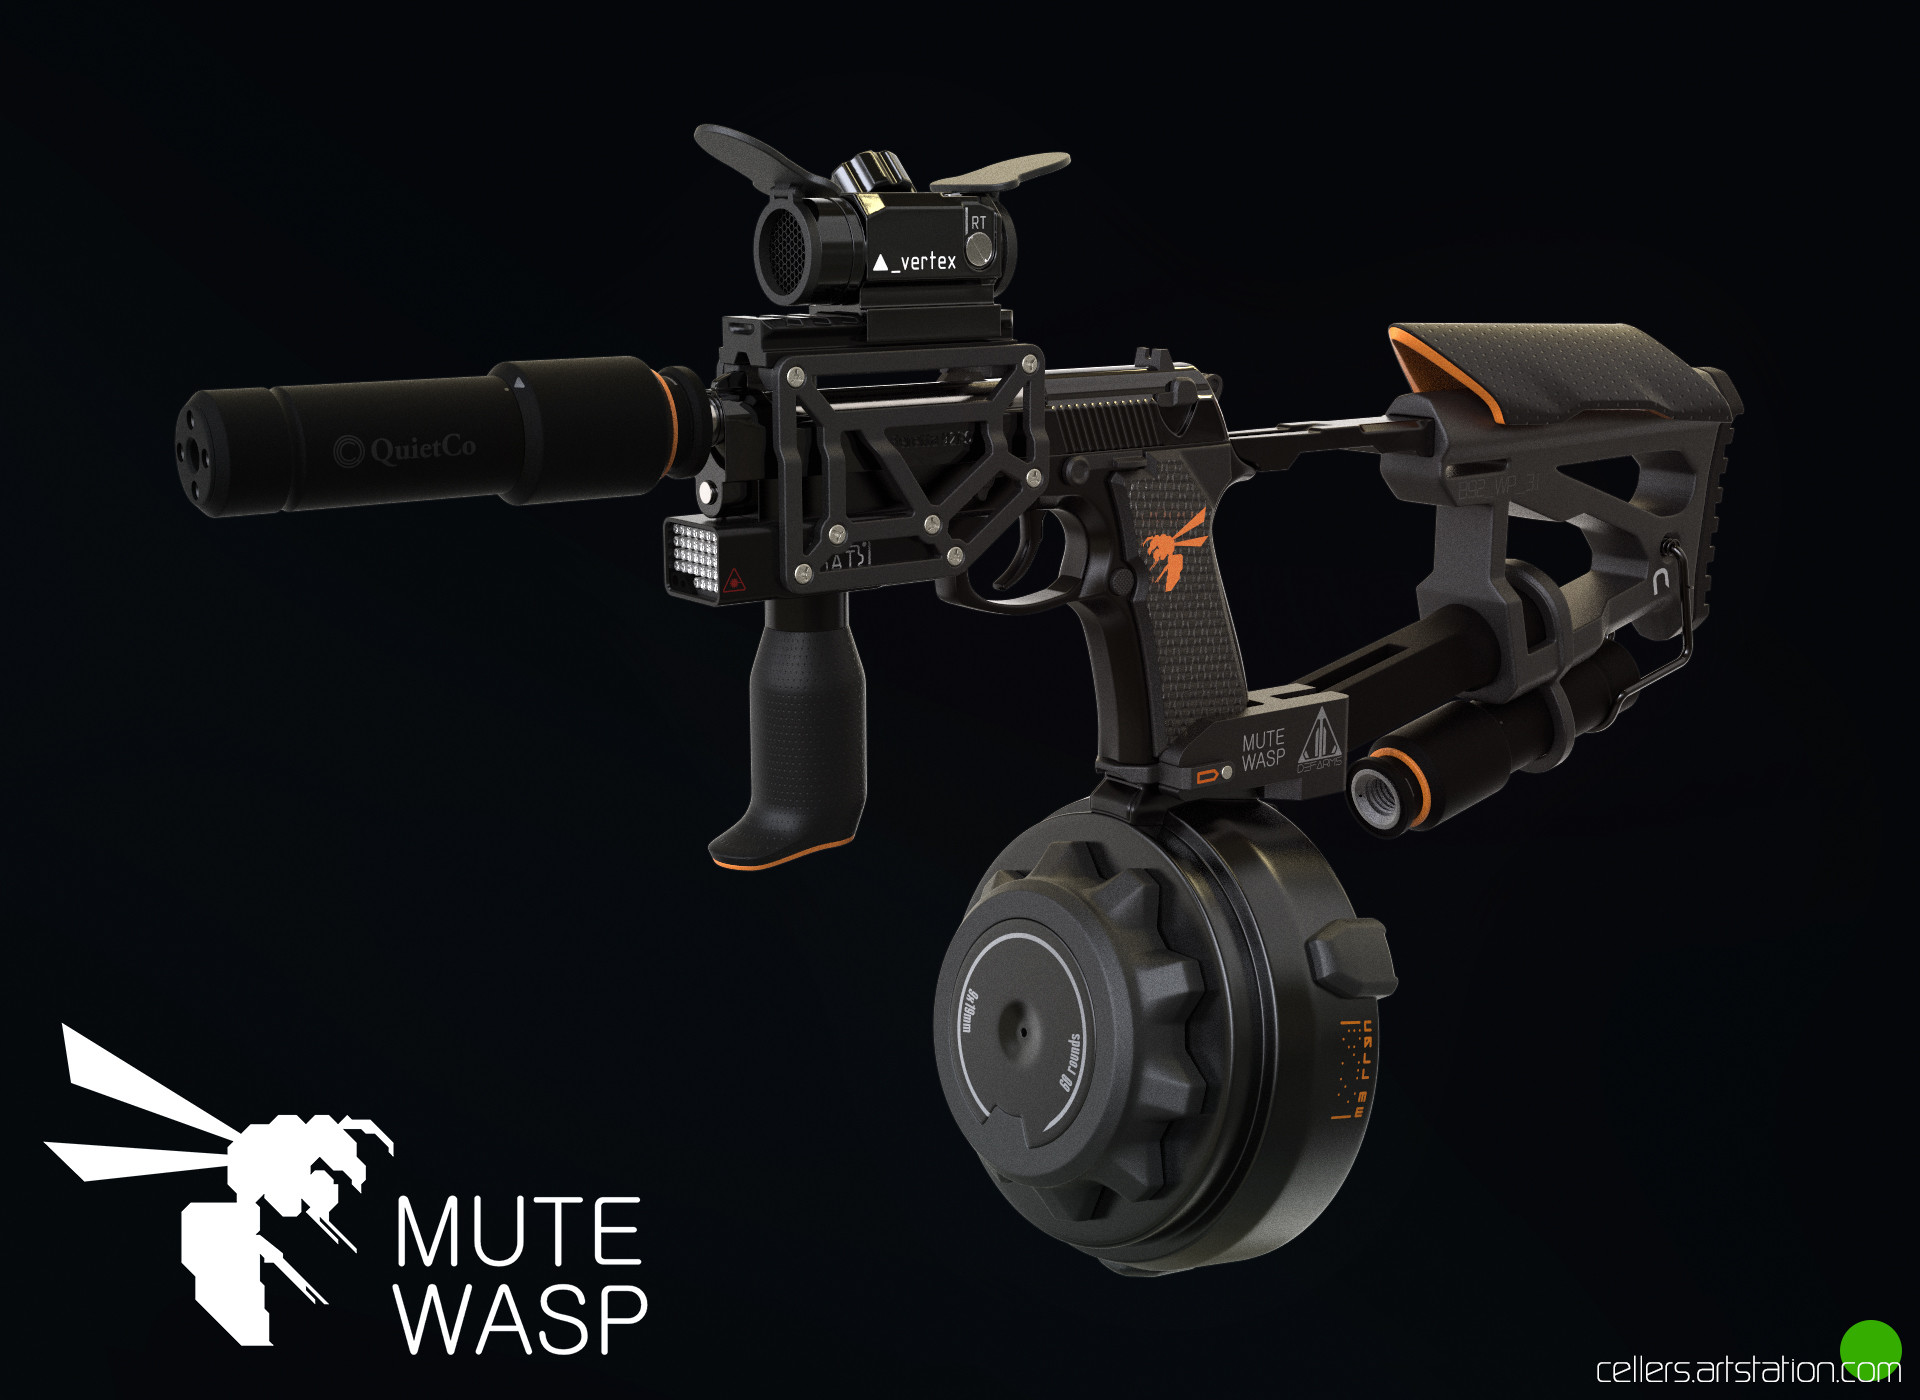 ArtStation - MUTE WASP machinepistol concept